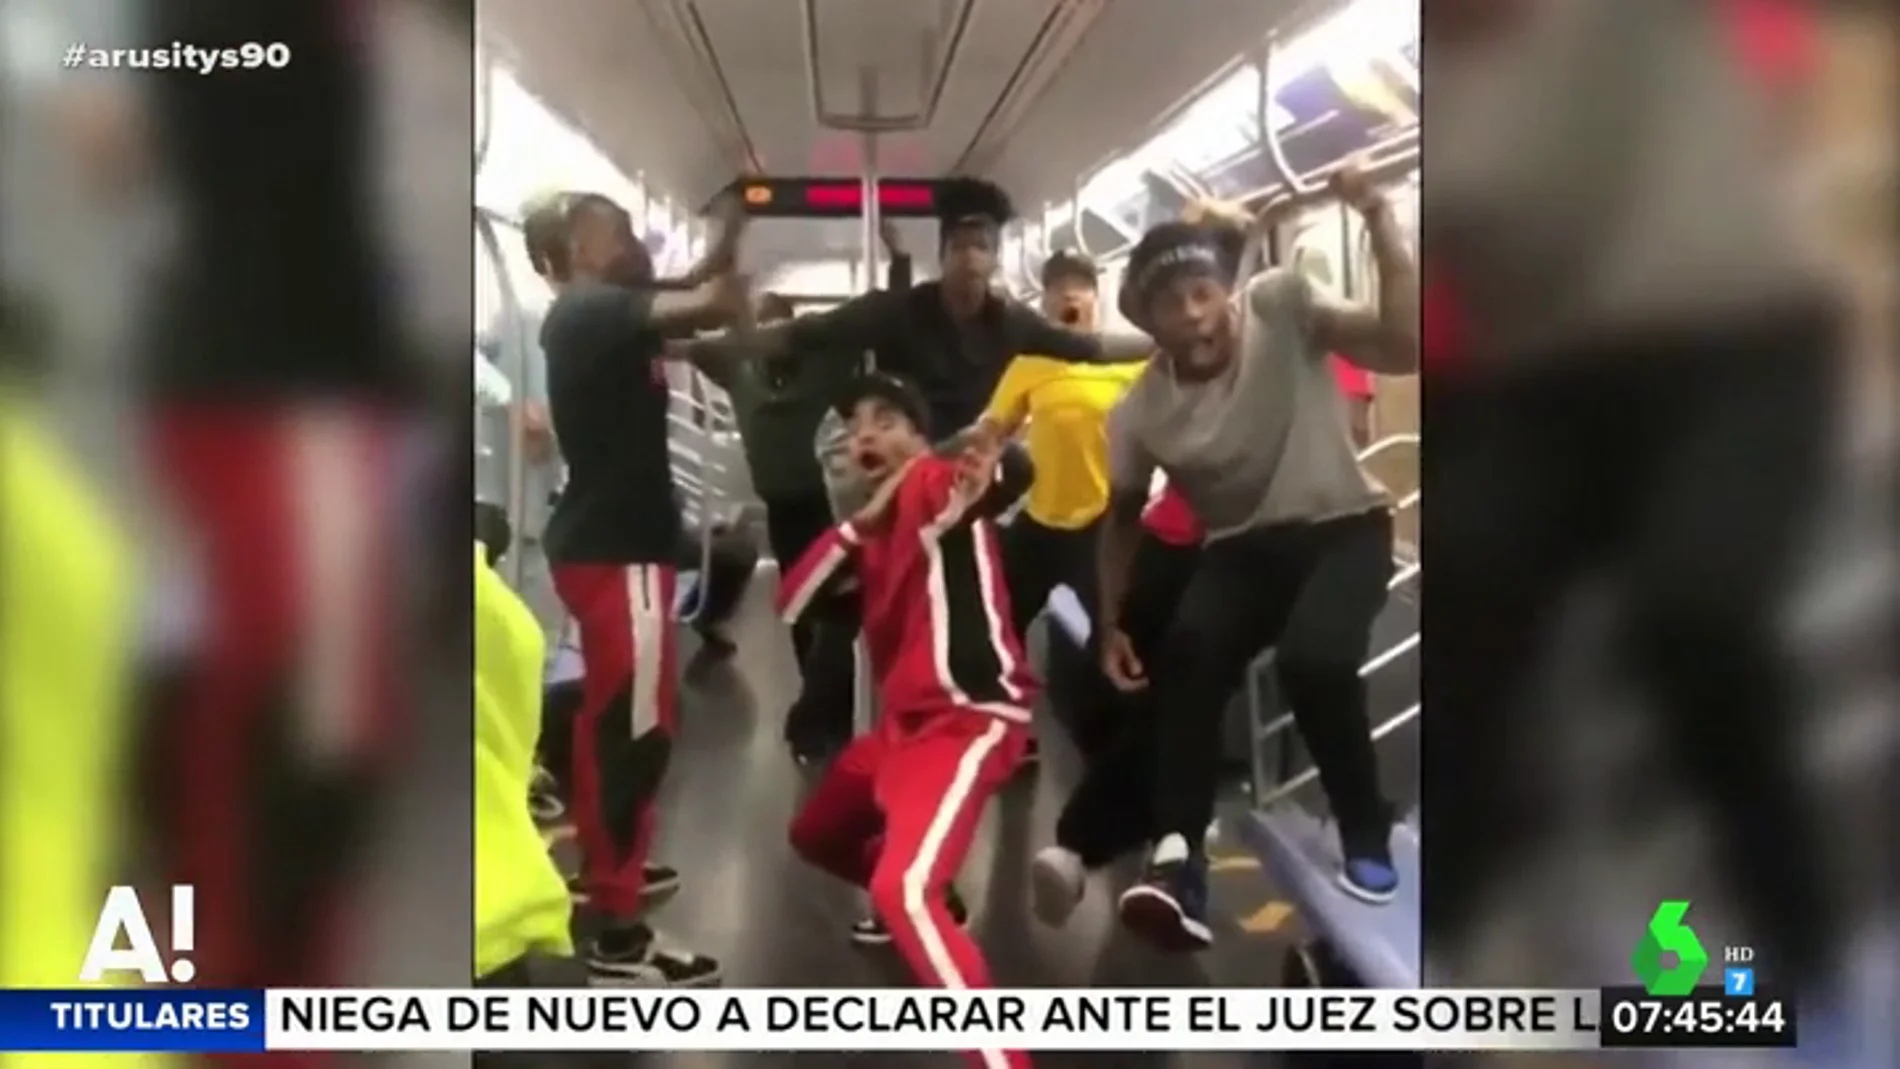 La espectacular coreografía de hip hop en el metro de Nueva York que se ha hecho viral